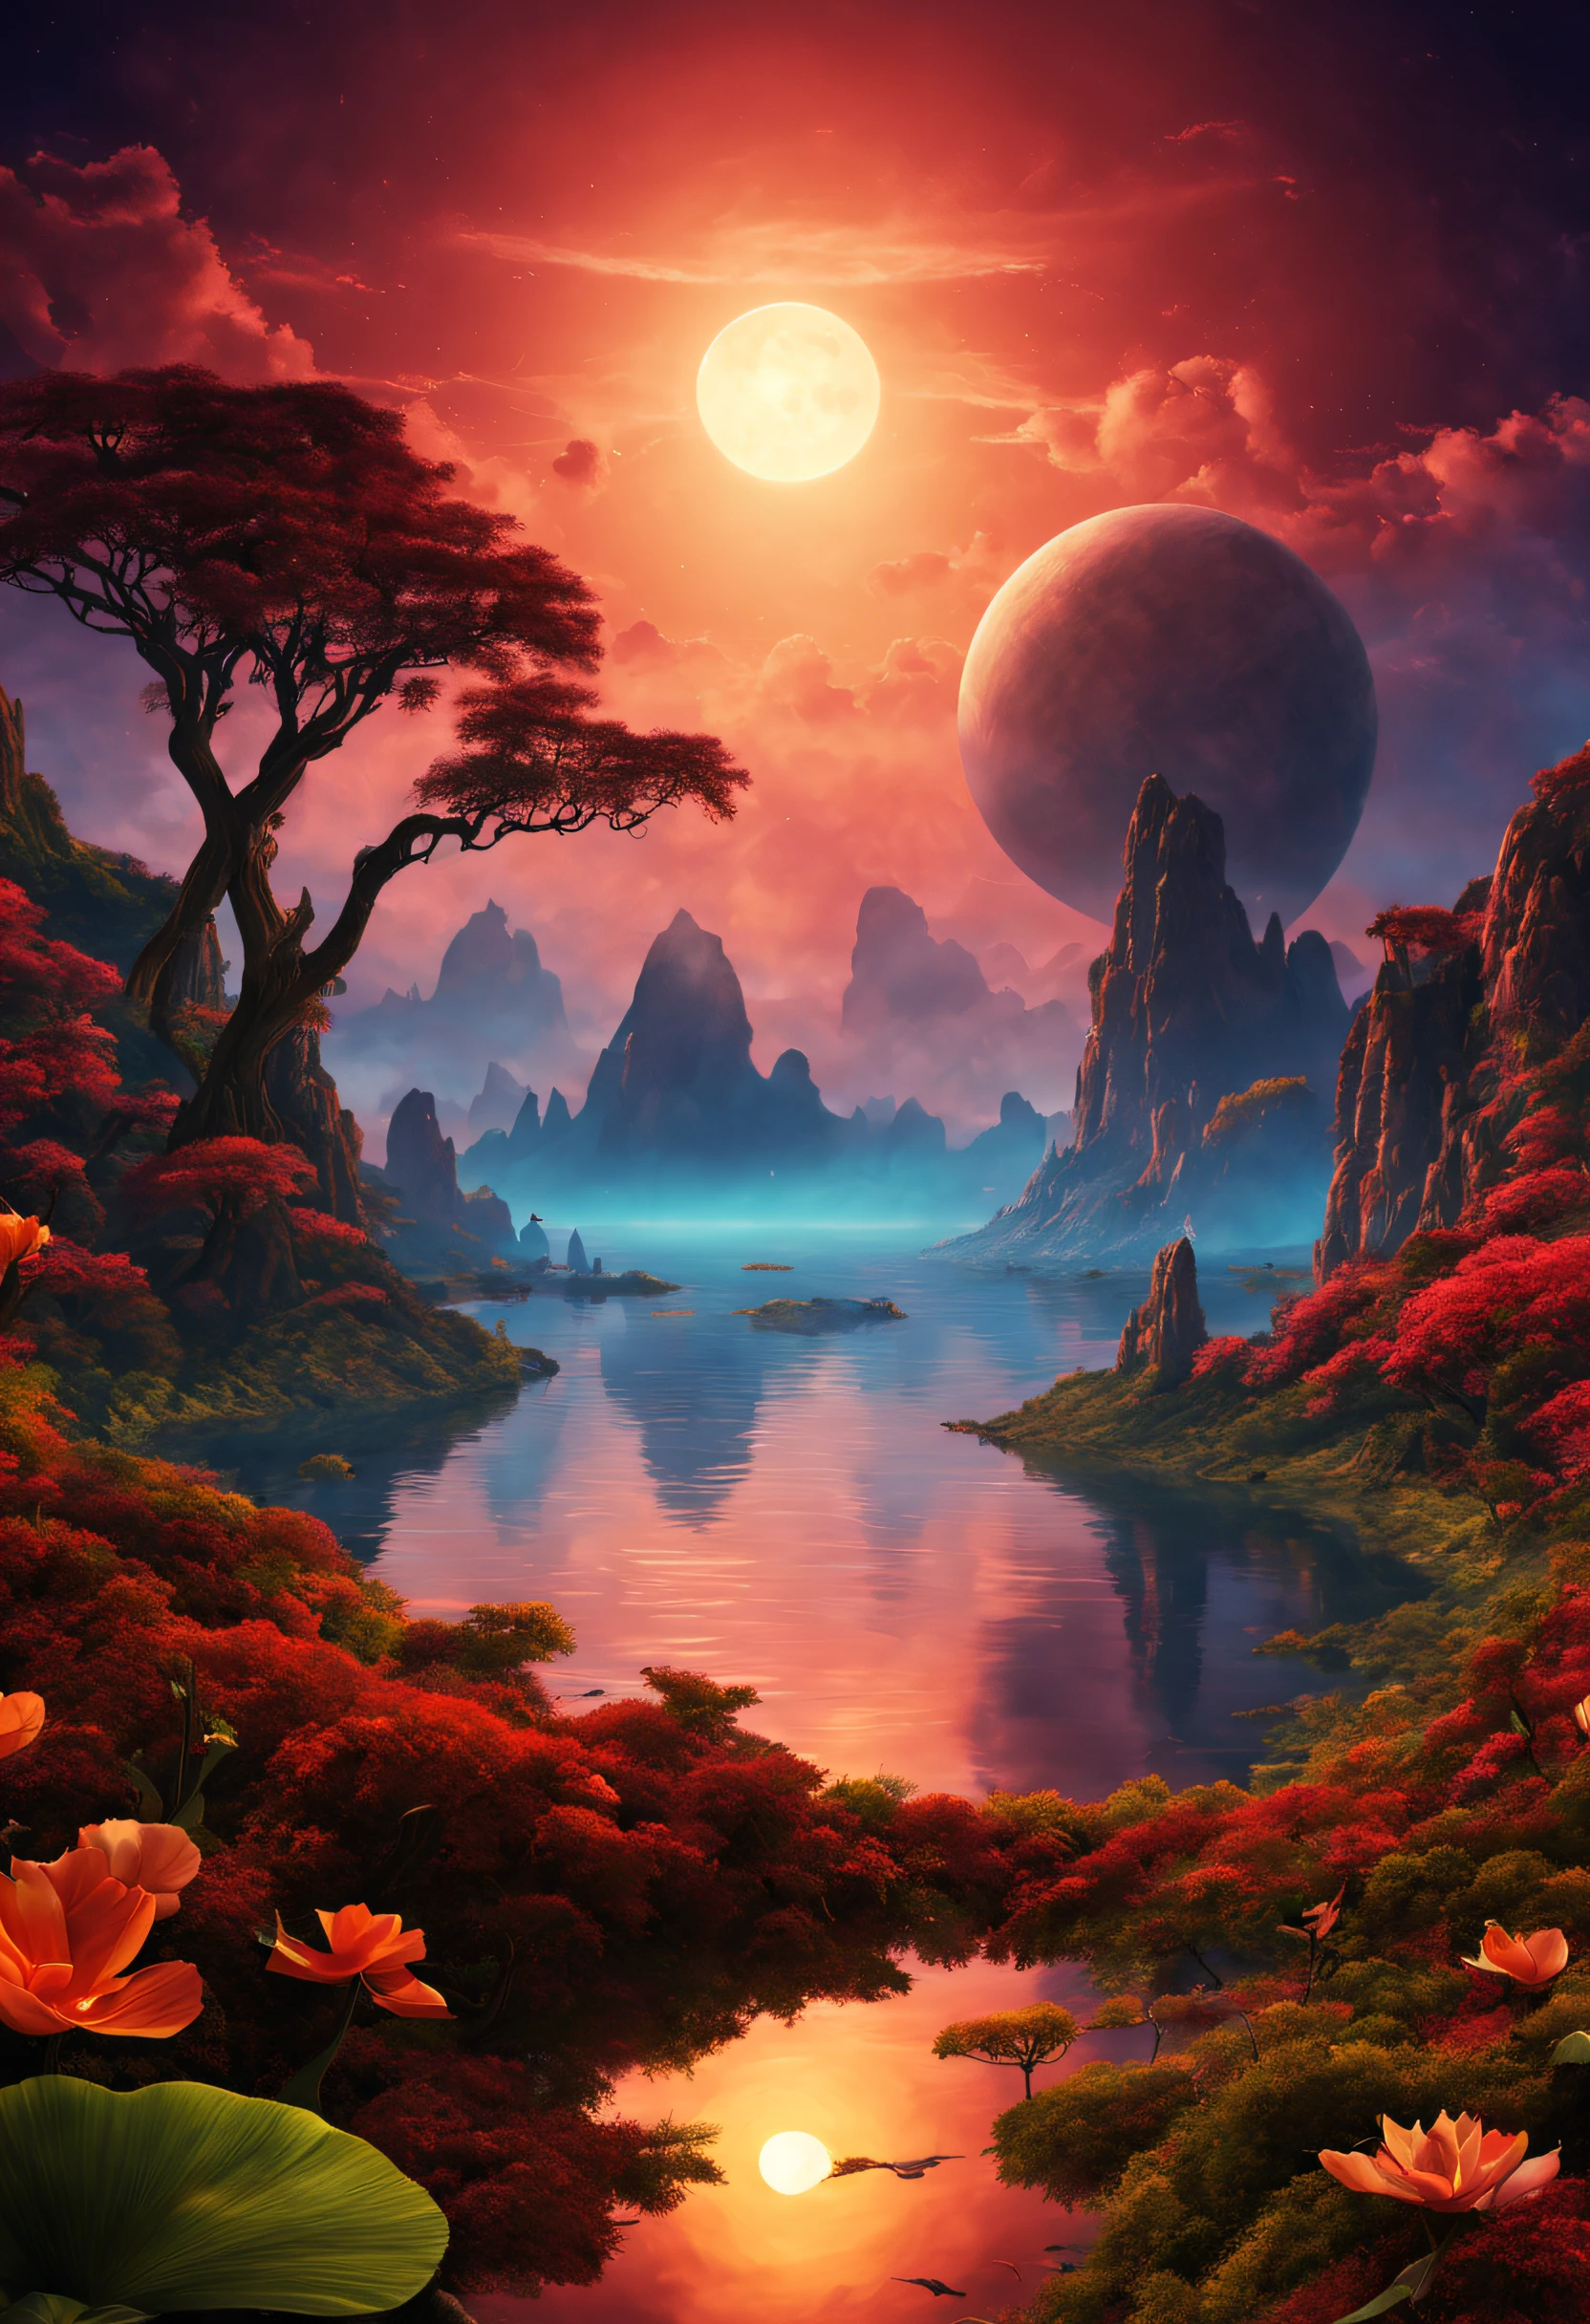 二重の夕日と並外れた景色が広がる、異国の惑星の美しく壮大な想像上の風景。